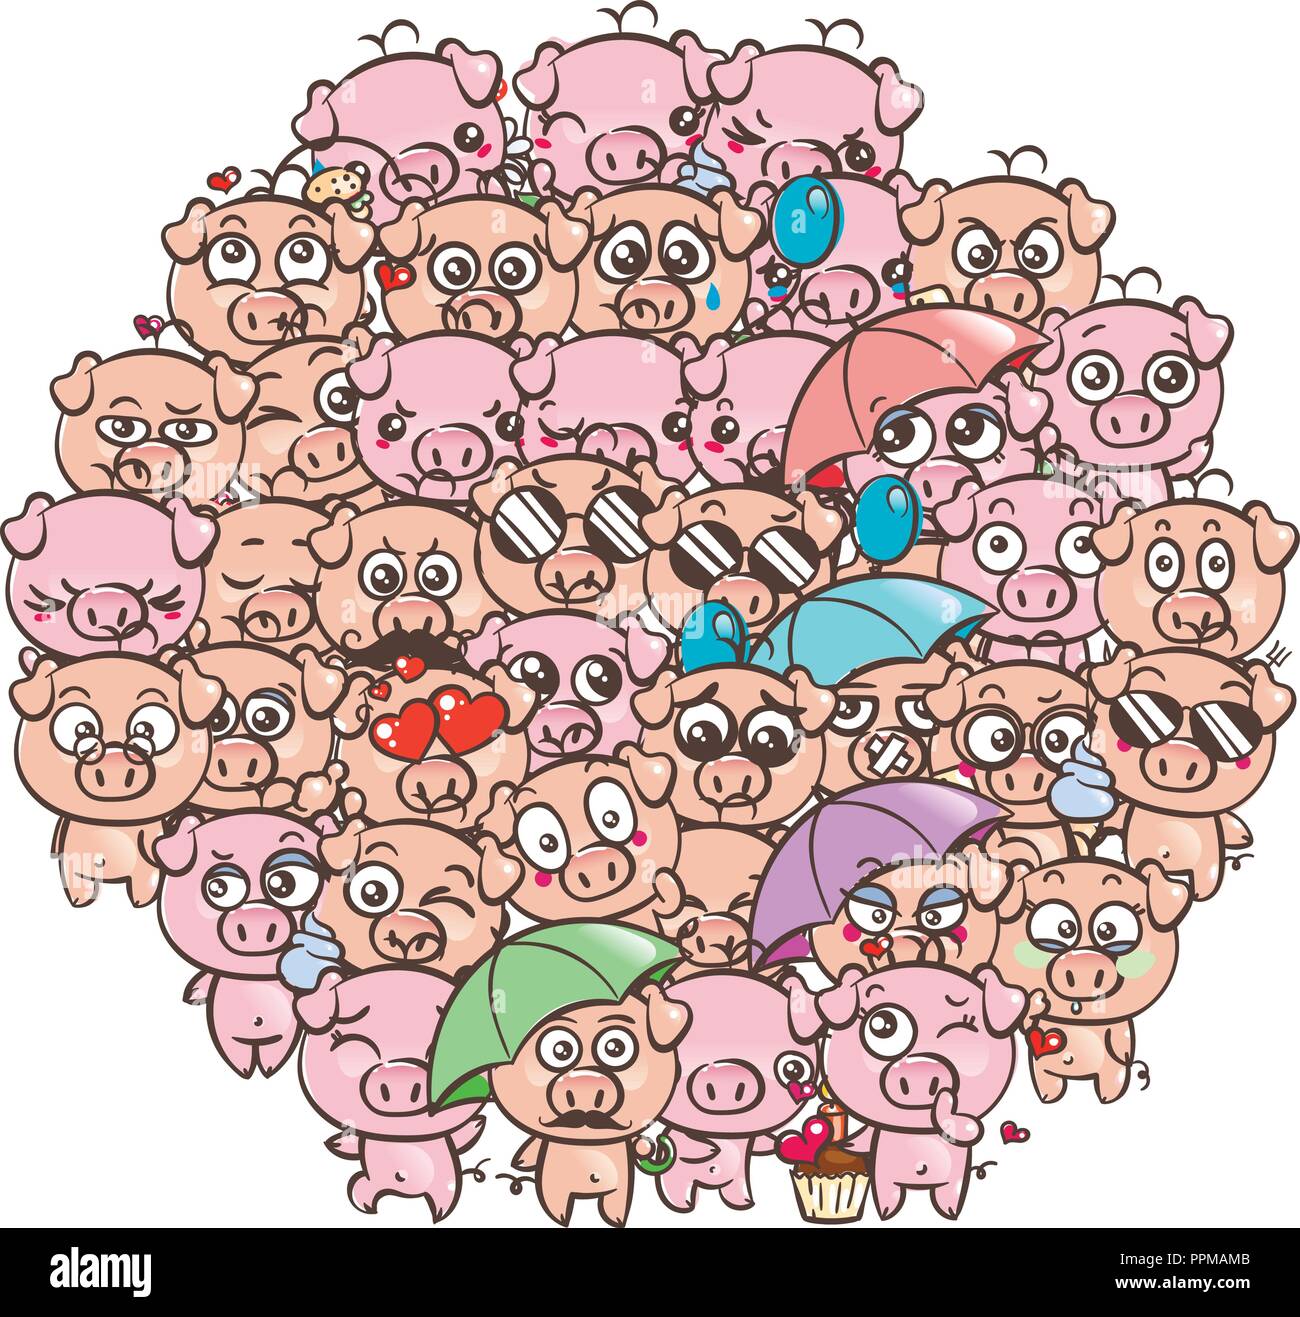 Fondo con lindos bebes lechones. Imagen de dibujos animados pastel kawaii  cerdos. Vector por dibujar a mano alzada doodle comic emoji art.  ilustración para libros, grabados, d Imagen Vector de stock -